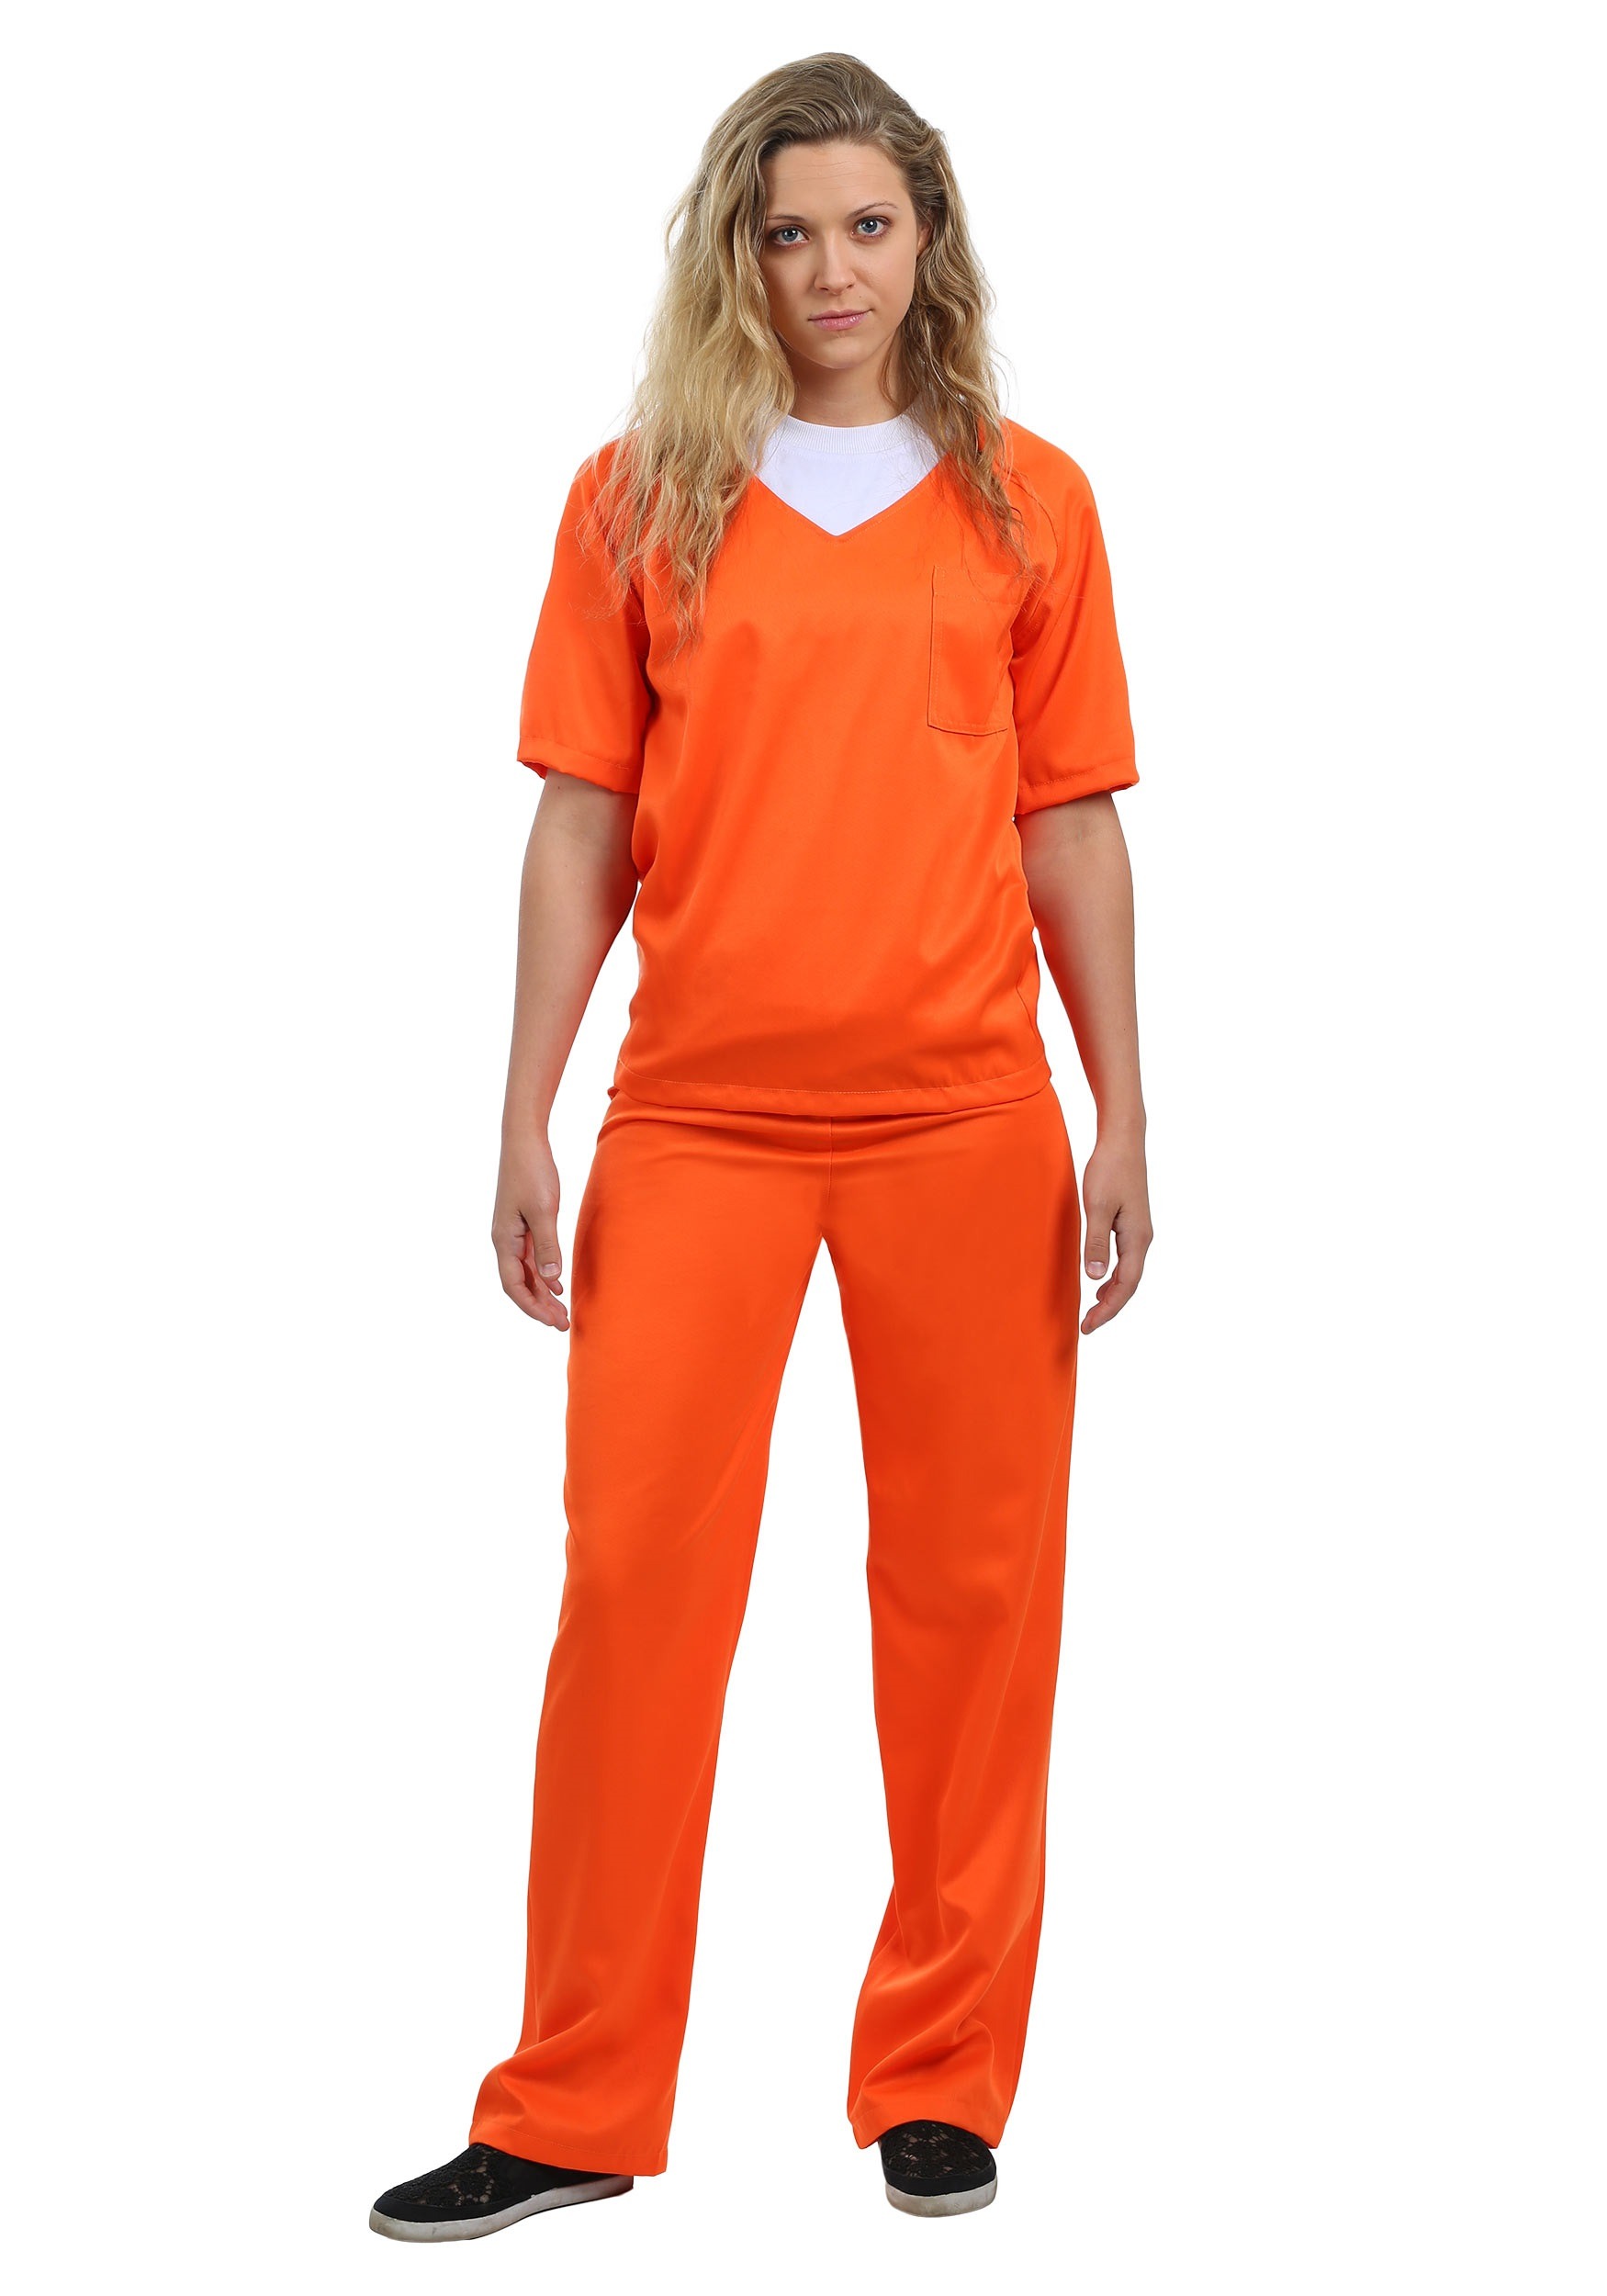 Photos - Fancy Dress FUN Costumes Orange Prisoner Costume Orange FUN6715AD